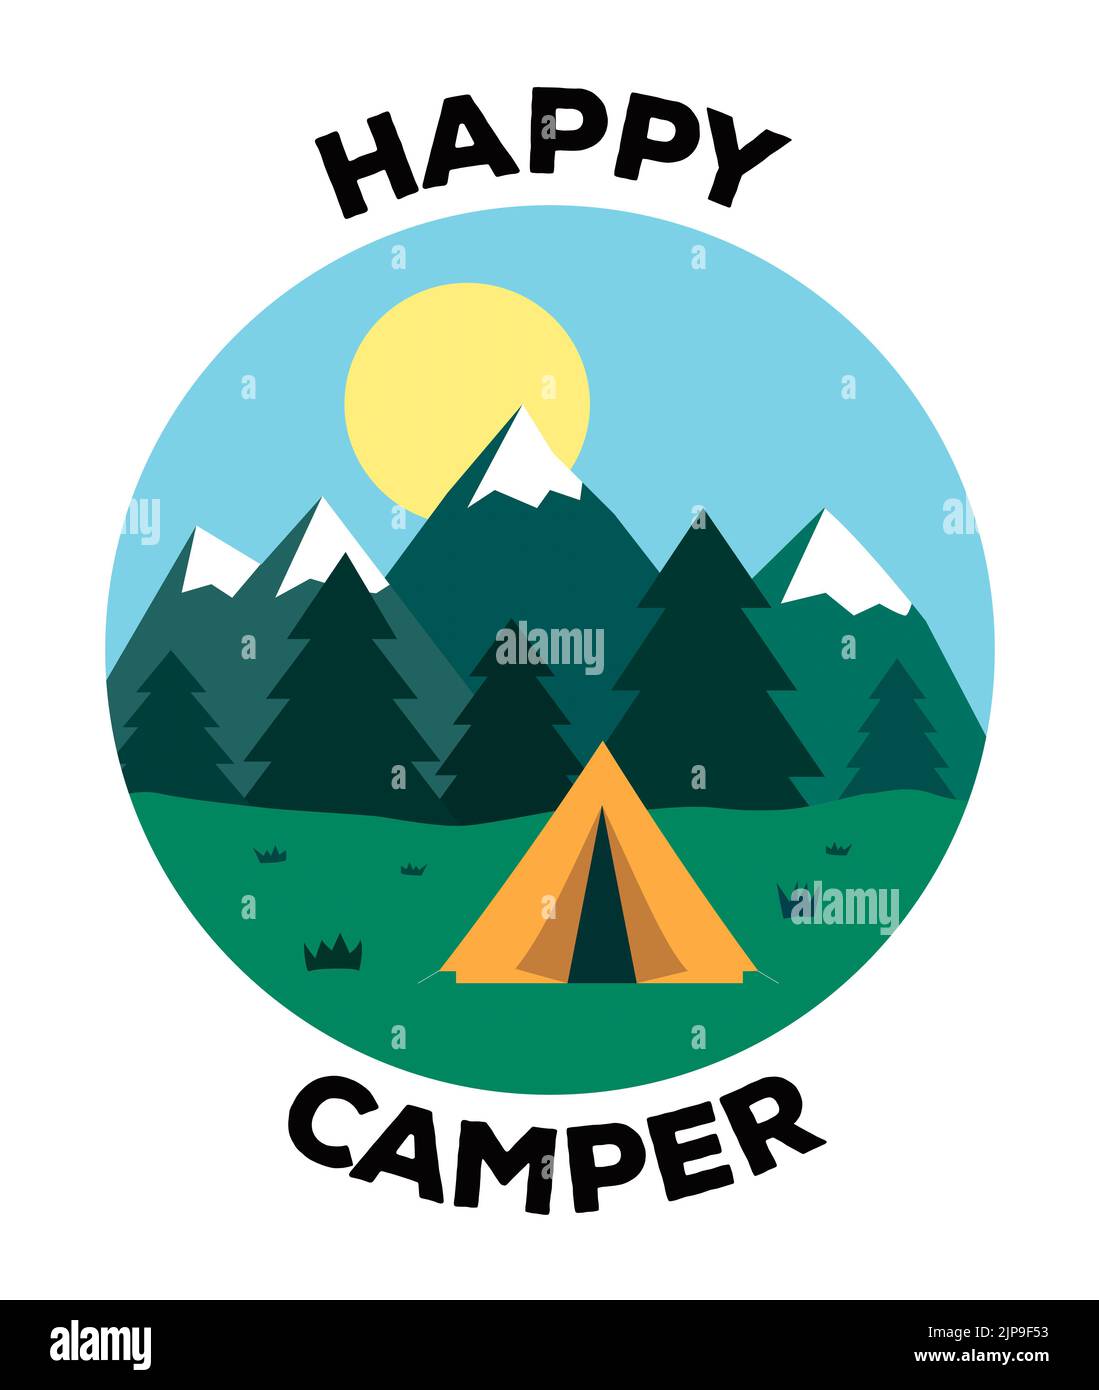 Grafische Darstellung eines Zeltes in einer ländlichen Szene mit fernen Bergen und der Beschriftung „Happy Camper“ Stockfoto